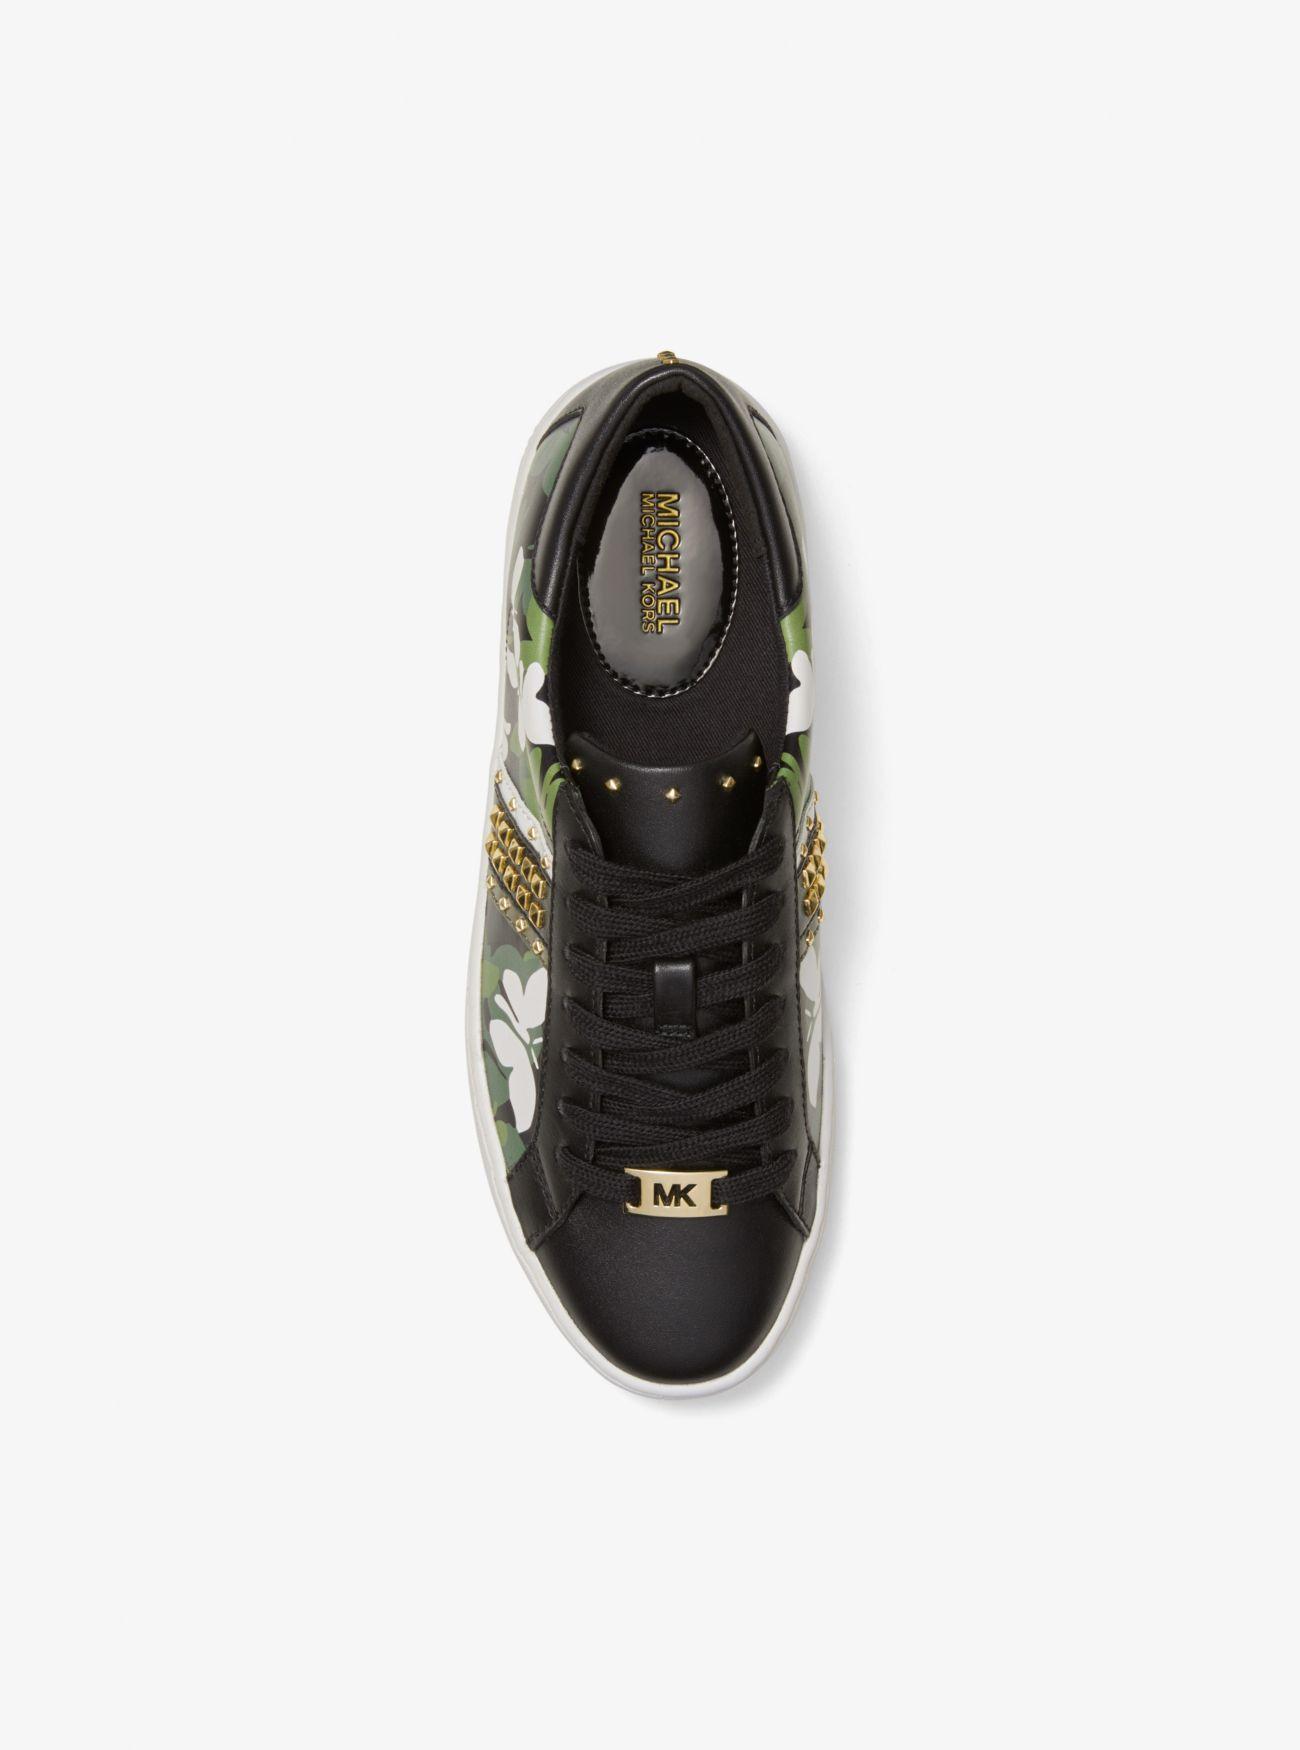 Michael Kors Keaton Butterfly Camo Leather Sneaker in Black | Lyst